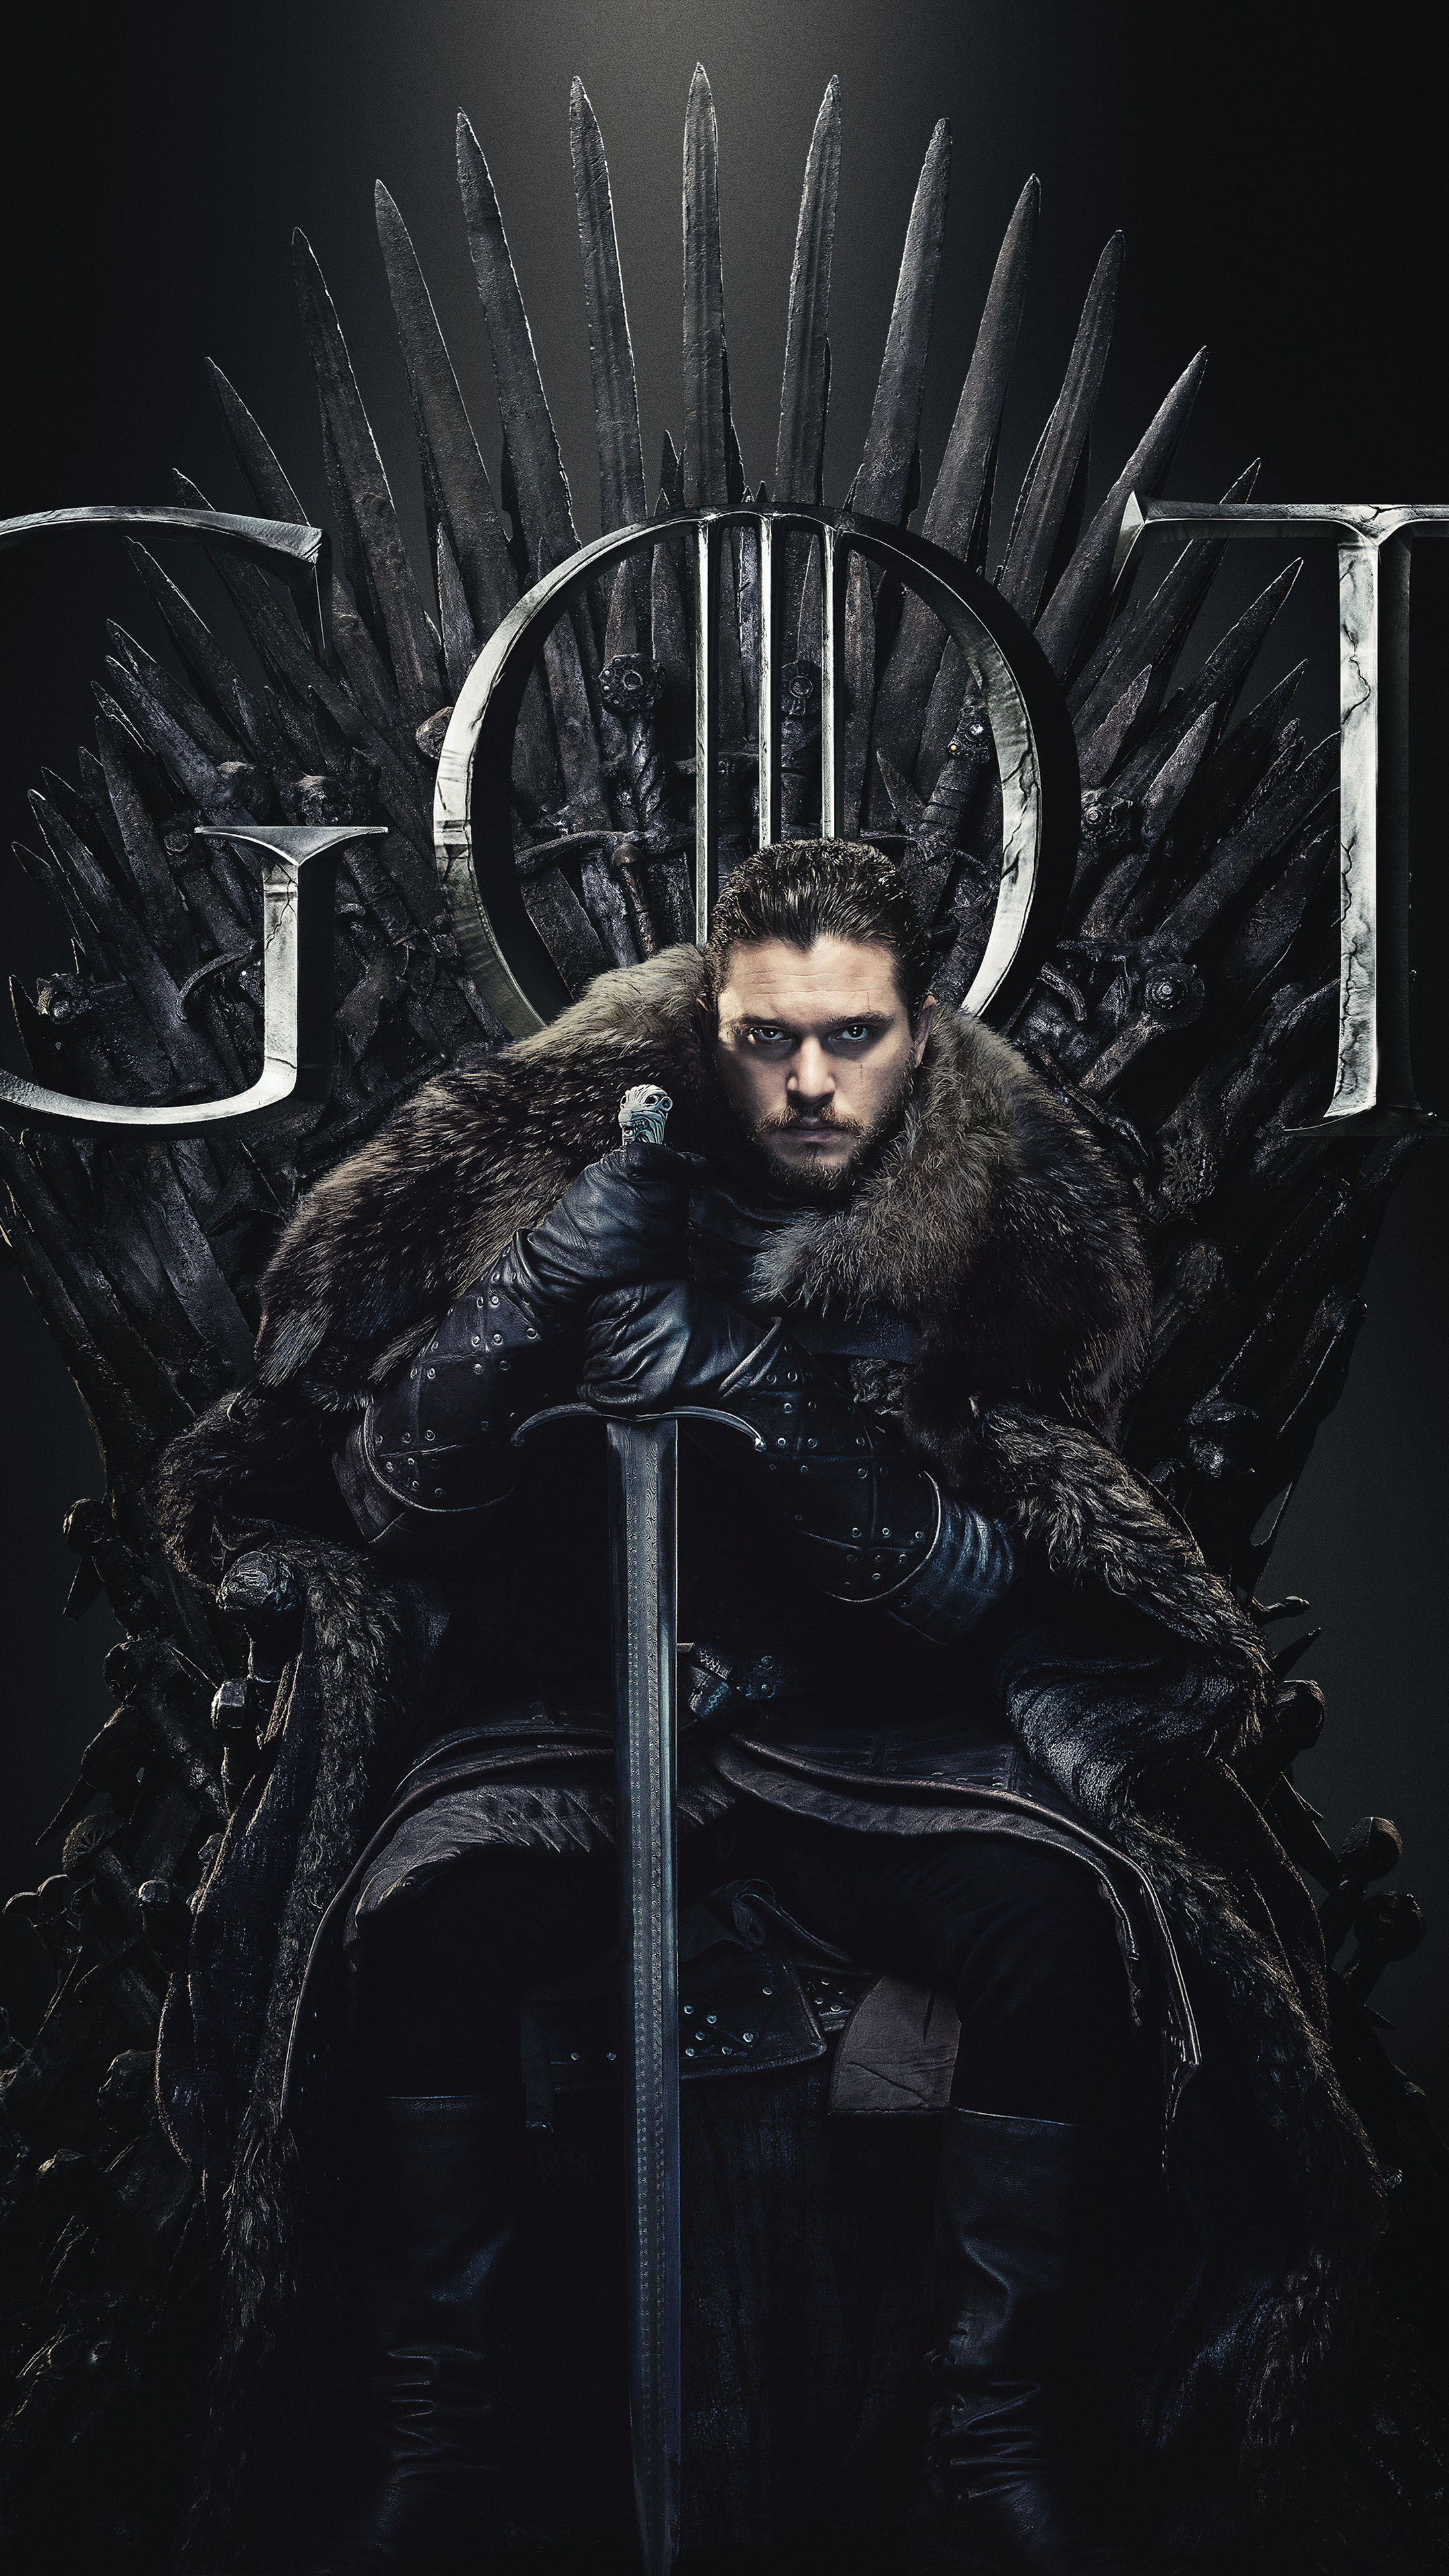 Jon Snow: Jon Snow là một nhân vật đầy quyến rũ và bí ẩn trong bộ phim truyền hình nổi tiếng Game of Thrones. Hình ảnh của anh ta đầy sức hút và được nhiều người yêu thích. Nếu bạn là một fan của Game of Thrones hoặc muốn hiểu thêm về nhân vật này, hãy cùng chúng tôi tìm hiểu thêm về Jon Snow và những câu chuyện đầy kịch tính của anh ta.